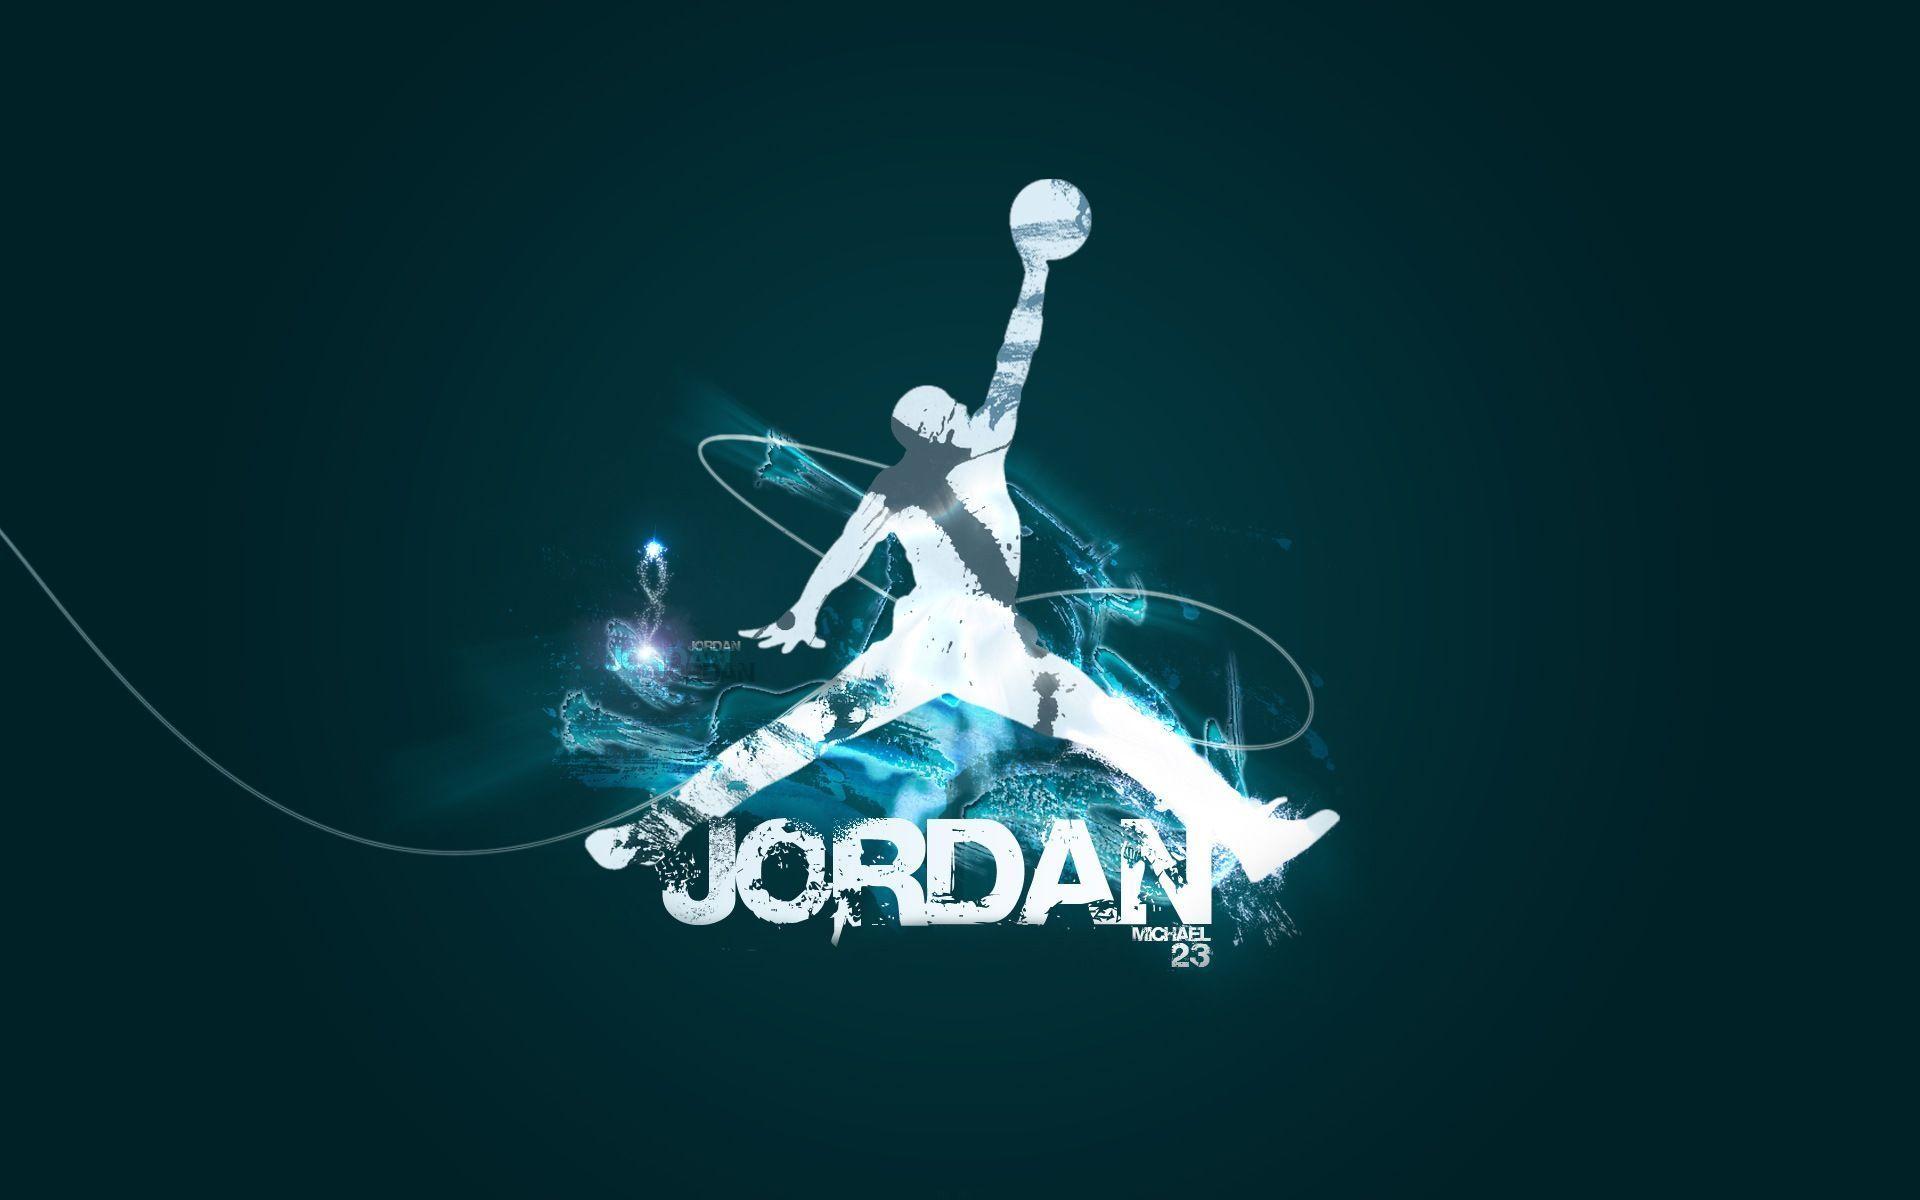 Nike Air Jordan Wallpaper and Iconic Image for Desktops